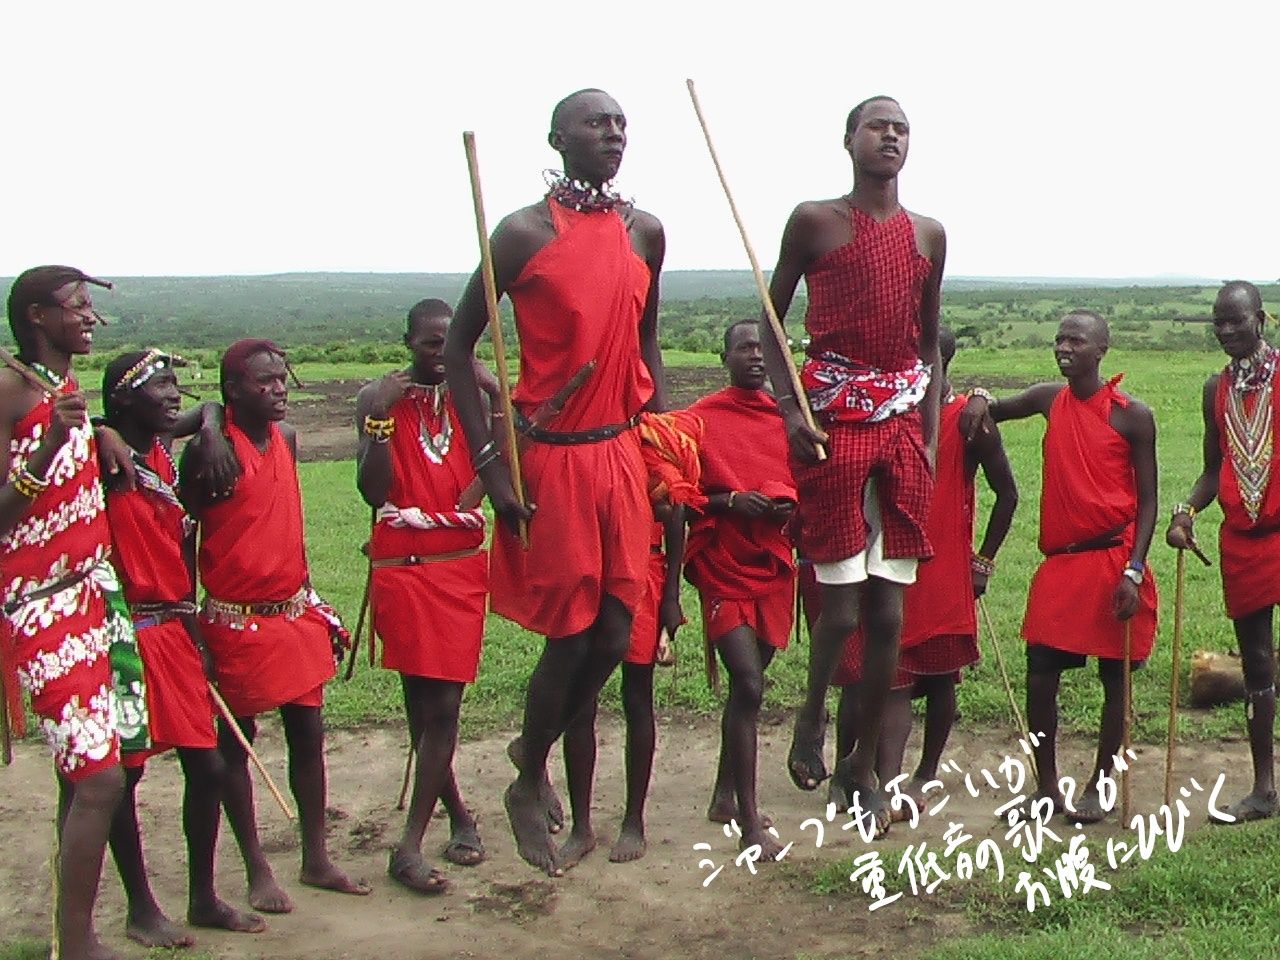 ケニア 元旦にマサイ族を訪ねて爆笑の火おこしを見た 地球のどこかから